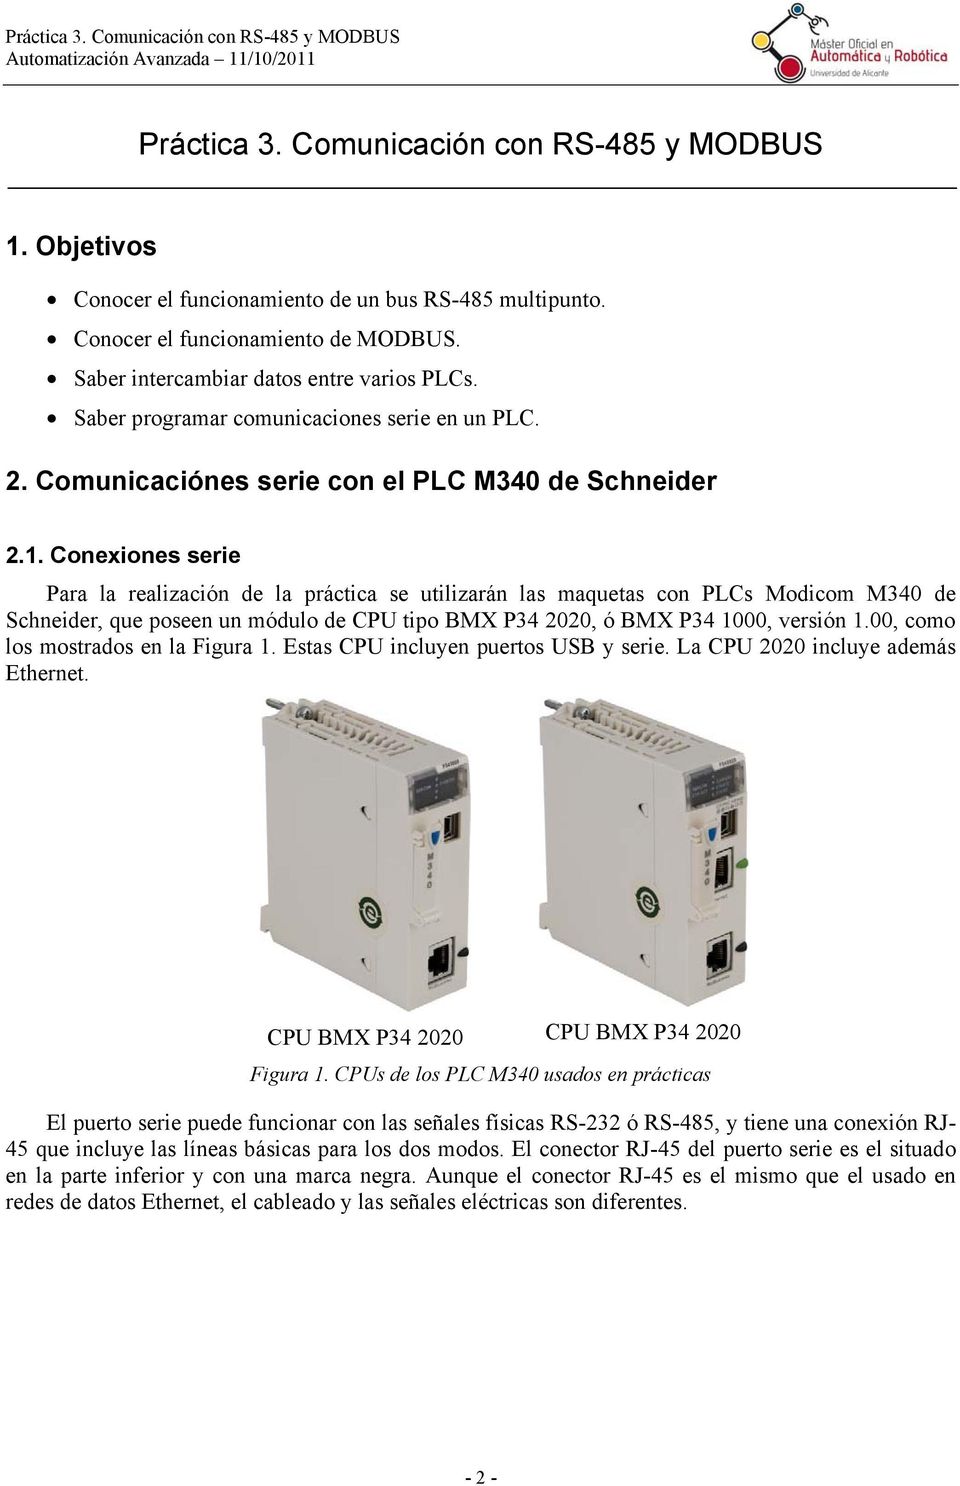 Conexiones serie Para la realización de la práctica se utilizarán las maquetas con PLCs Modicom M340 de Schneider, que poseen un módulo de CPU tipo BMX P34 2020, ó BMX P34 1000, versión 1.